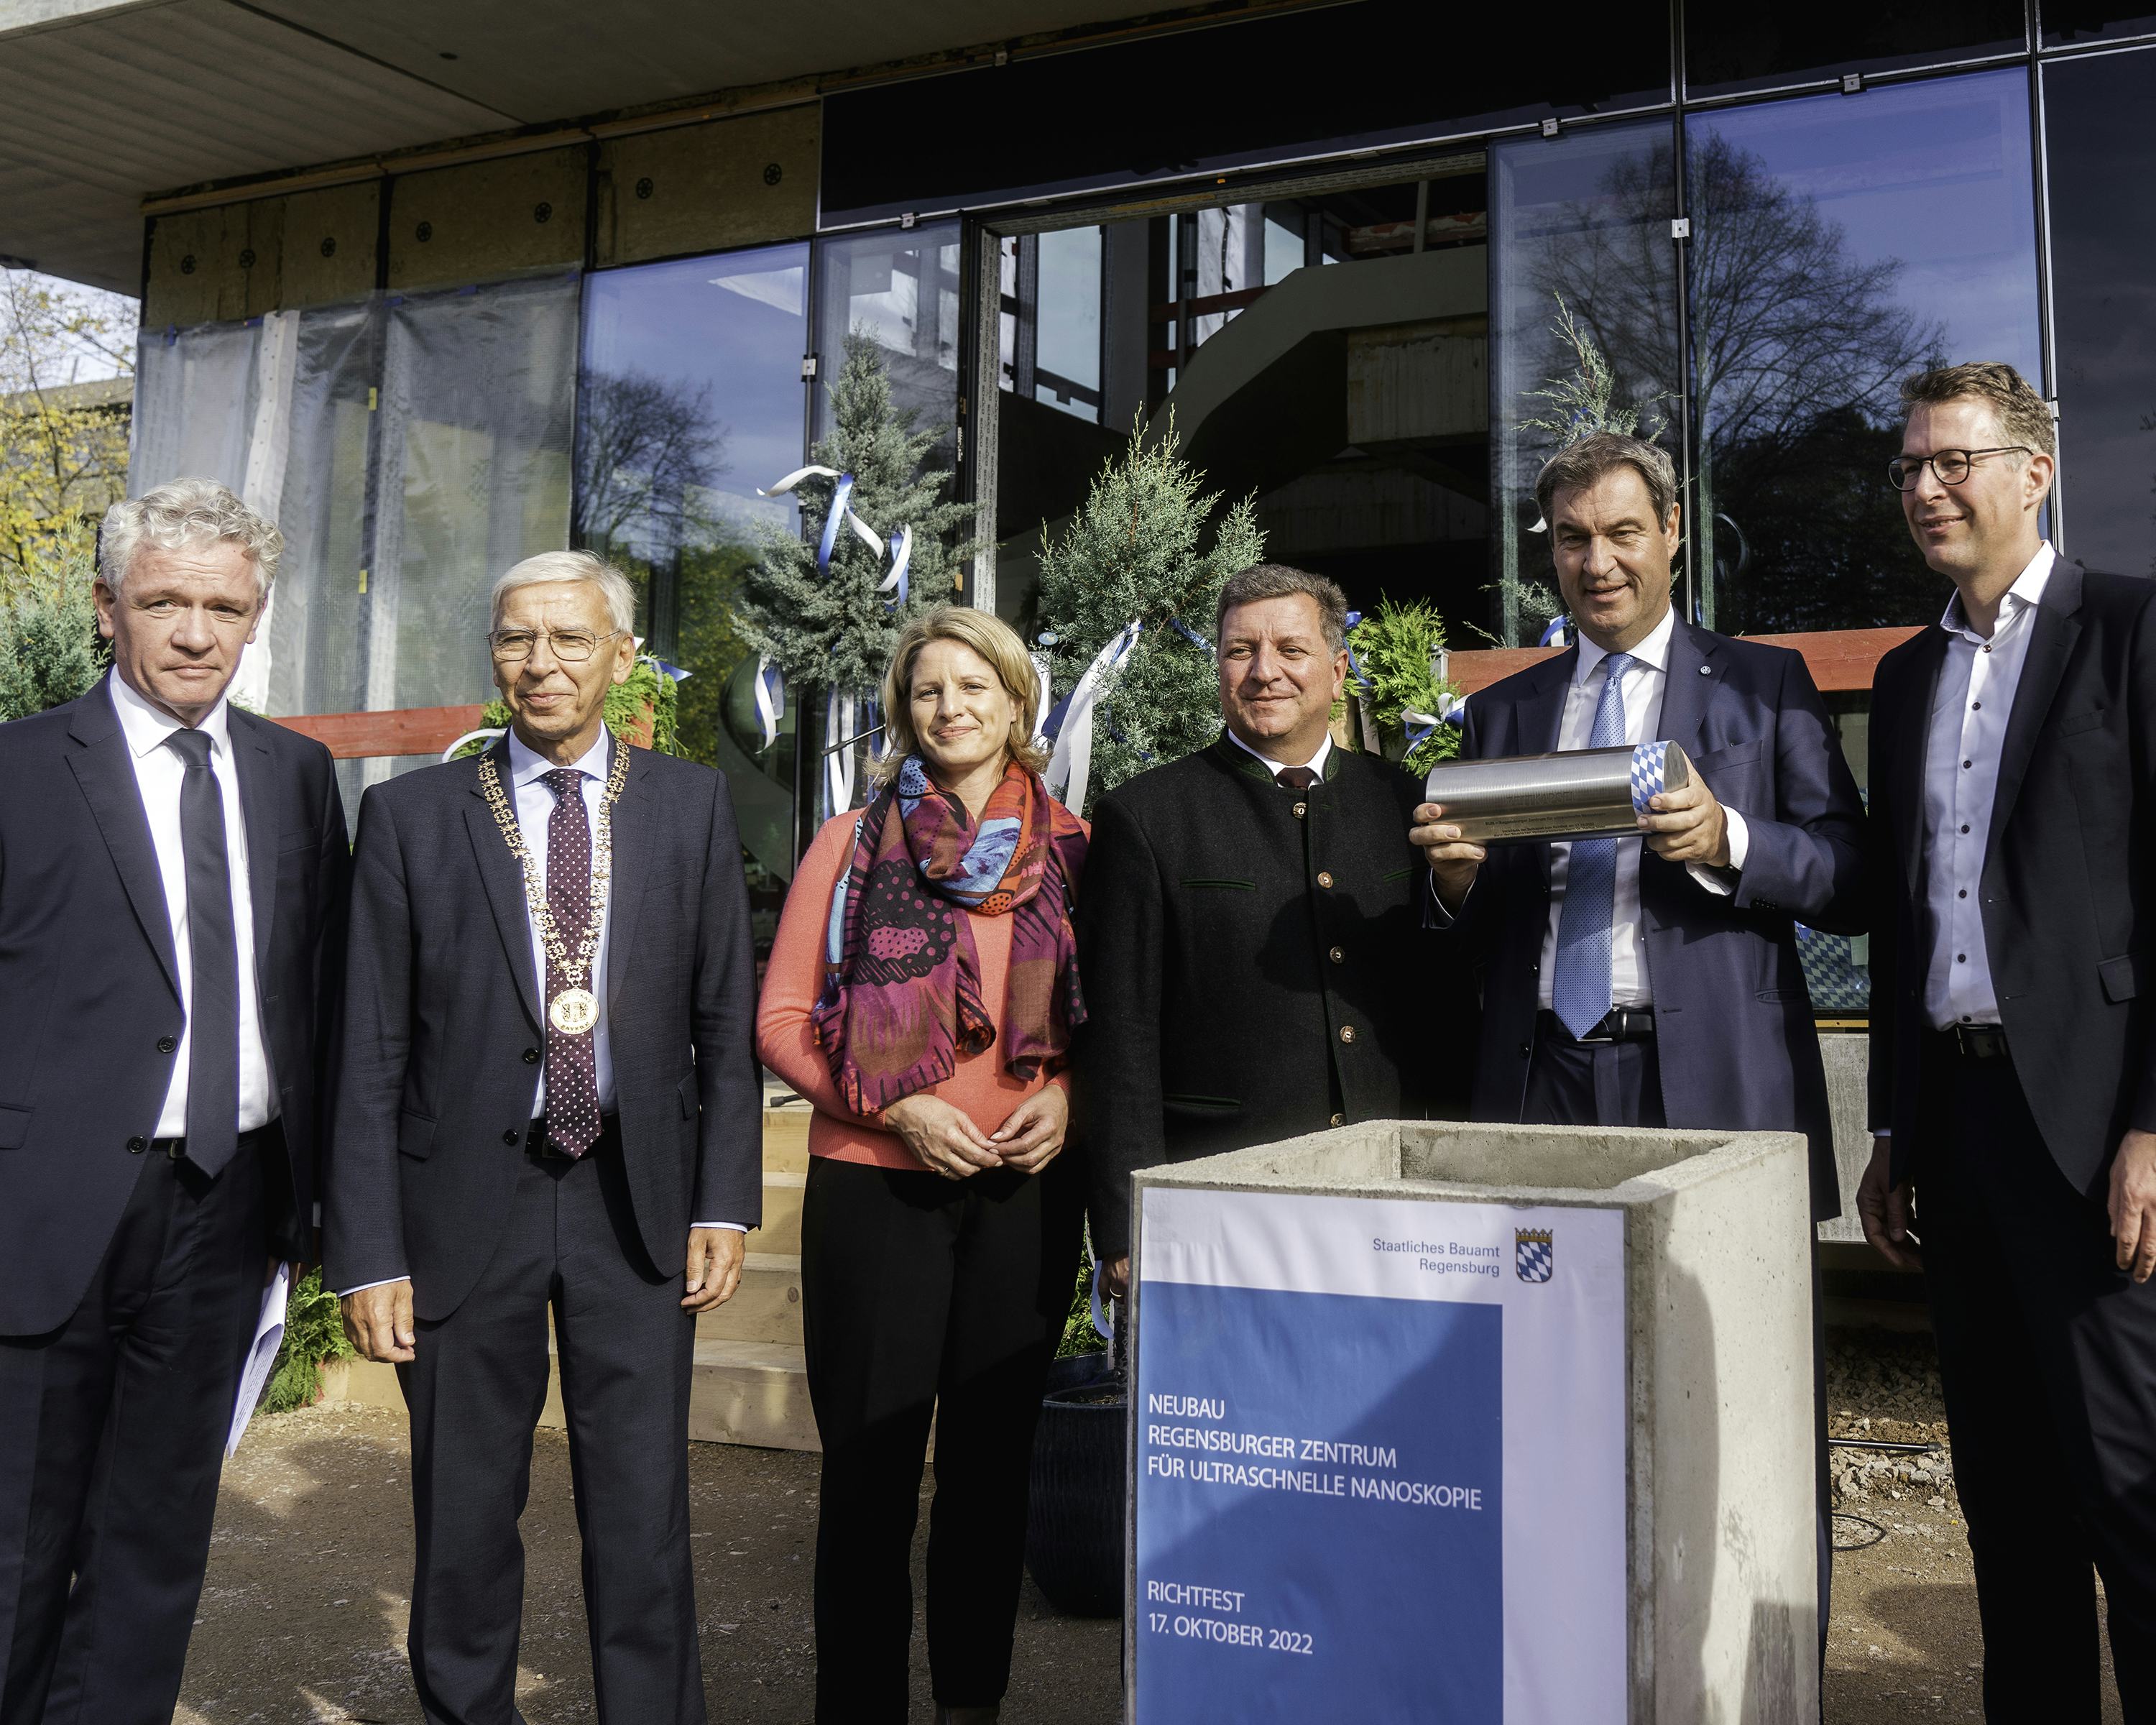 Der bayerische Ministerpräsident Dr. Markus Söder mit den Ehrengästen beim Richtfest für das Regensburger Zentrum für ultraschnelle Nanoskopie